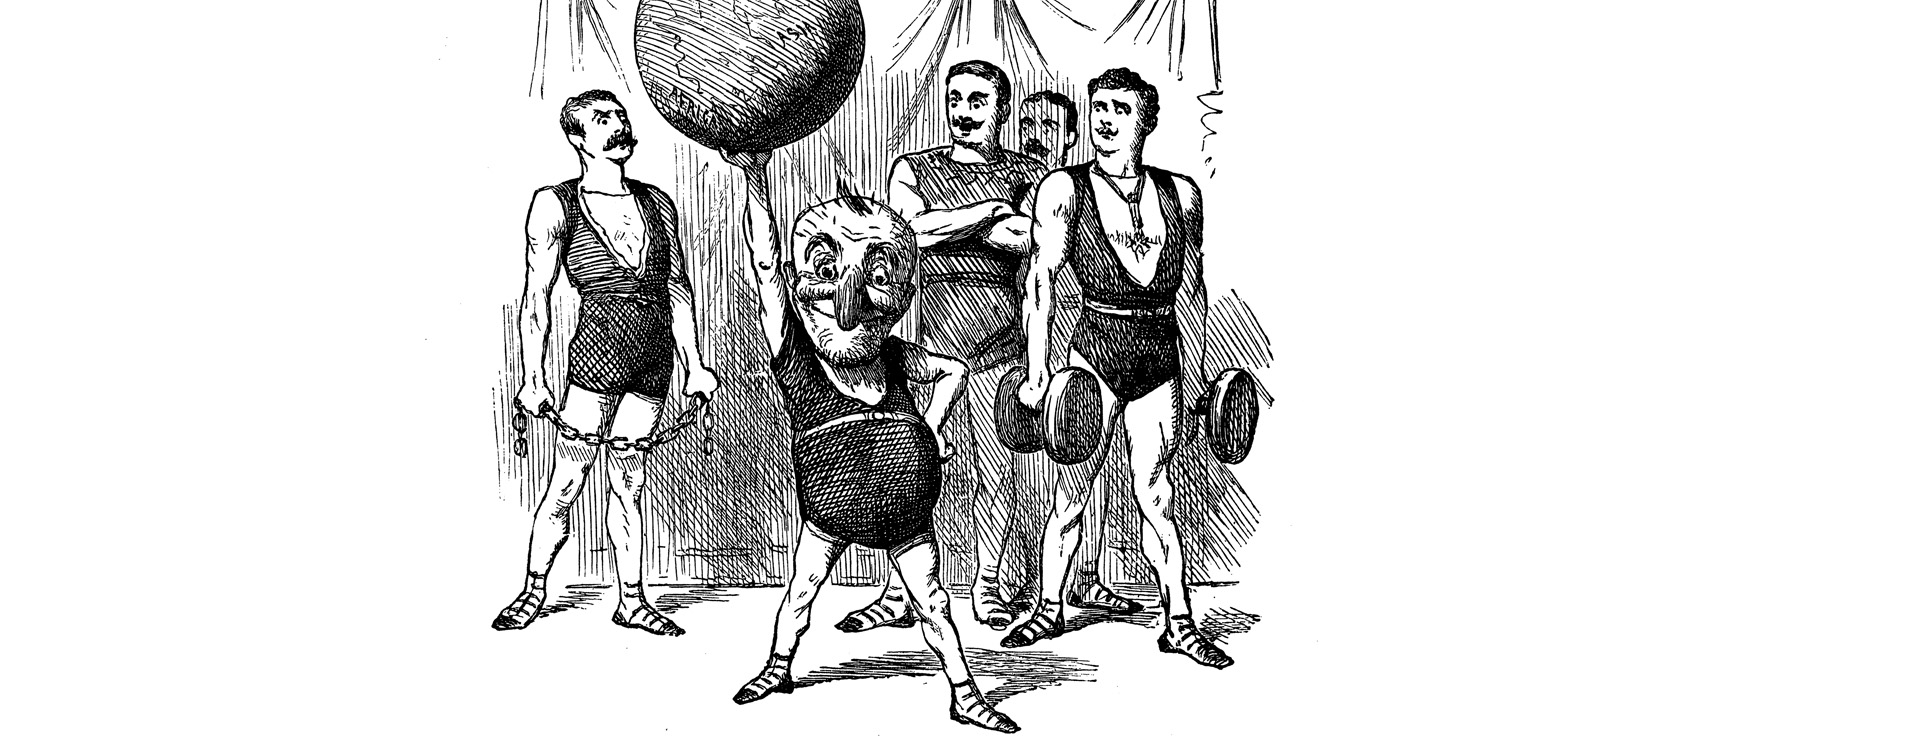 Victorian bodybuilders